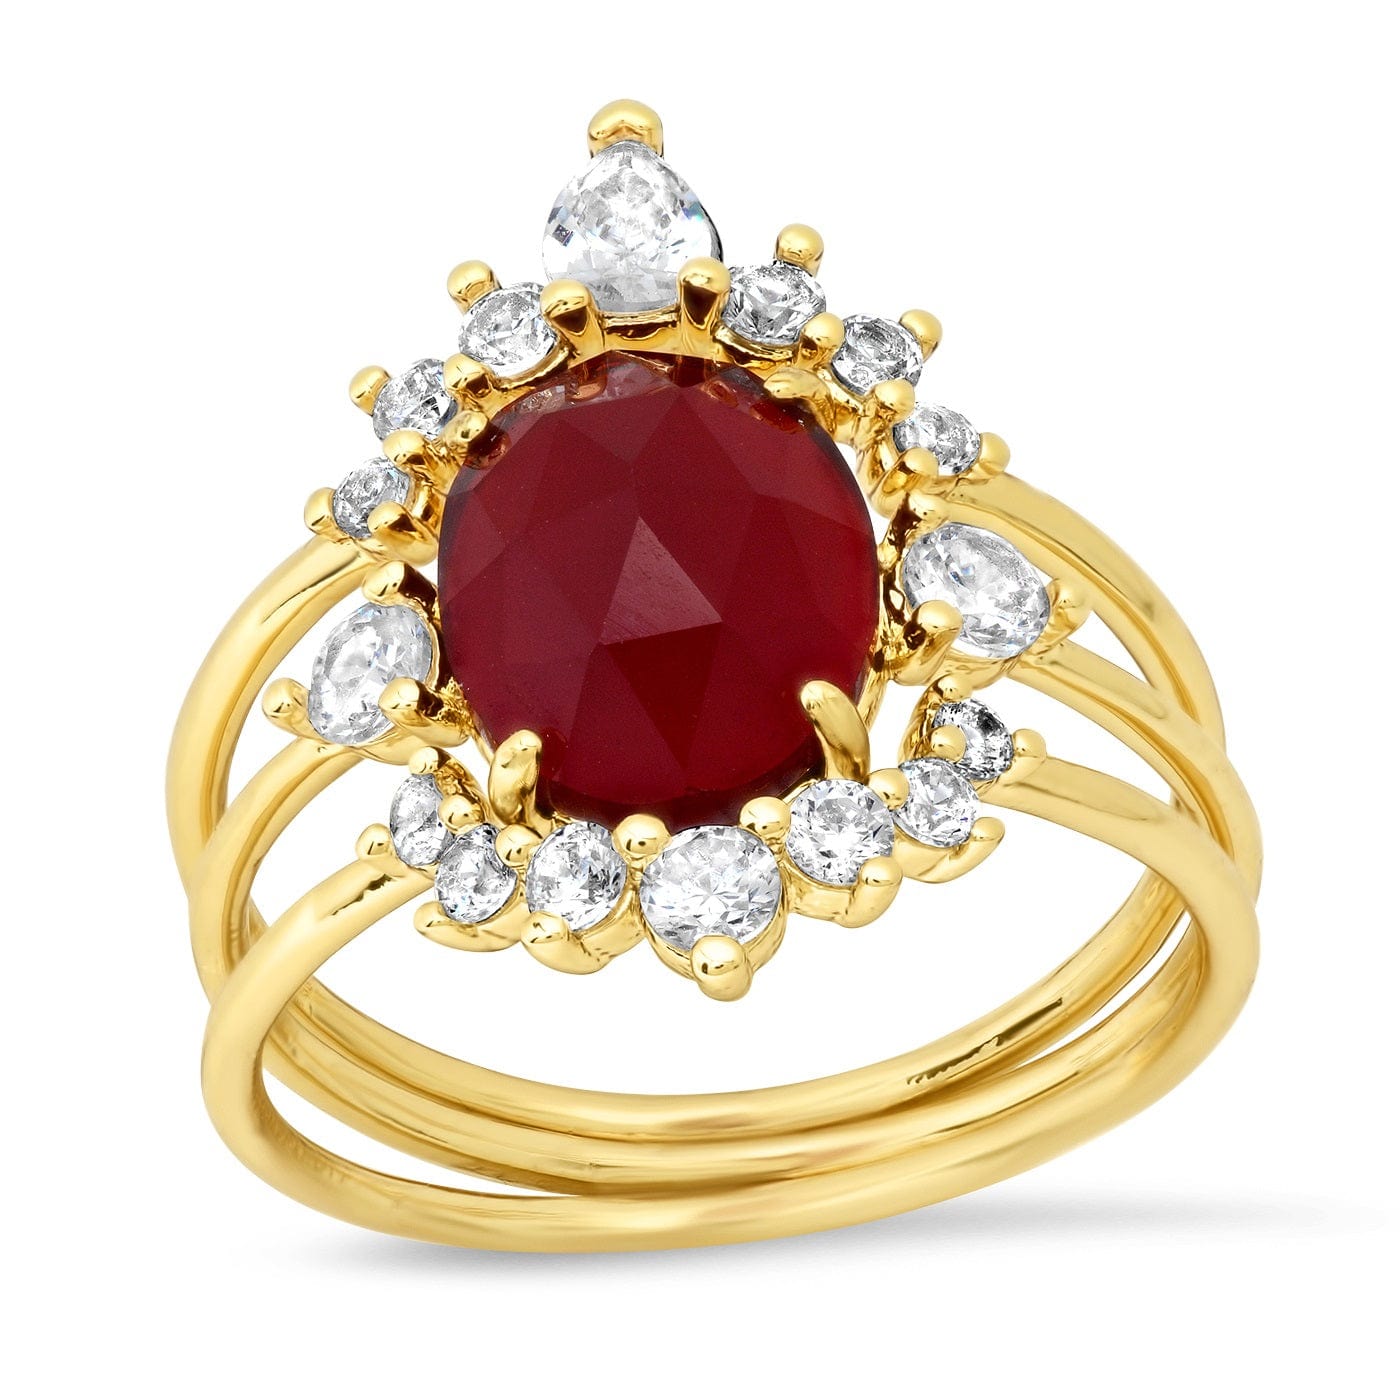 TAI JEWELRY Rings January / 6 Three Piece Vintage Inspired Birthstone Ring